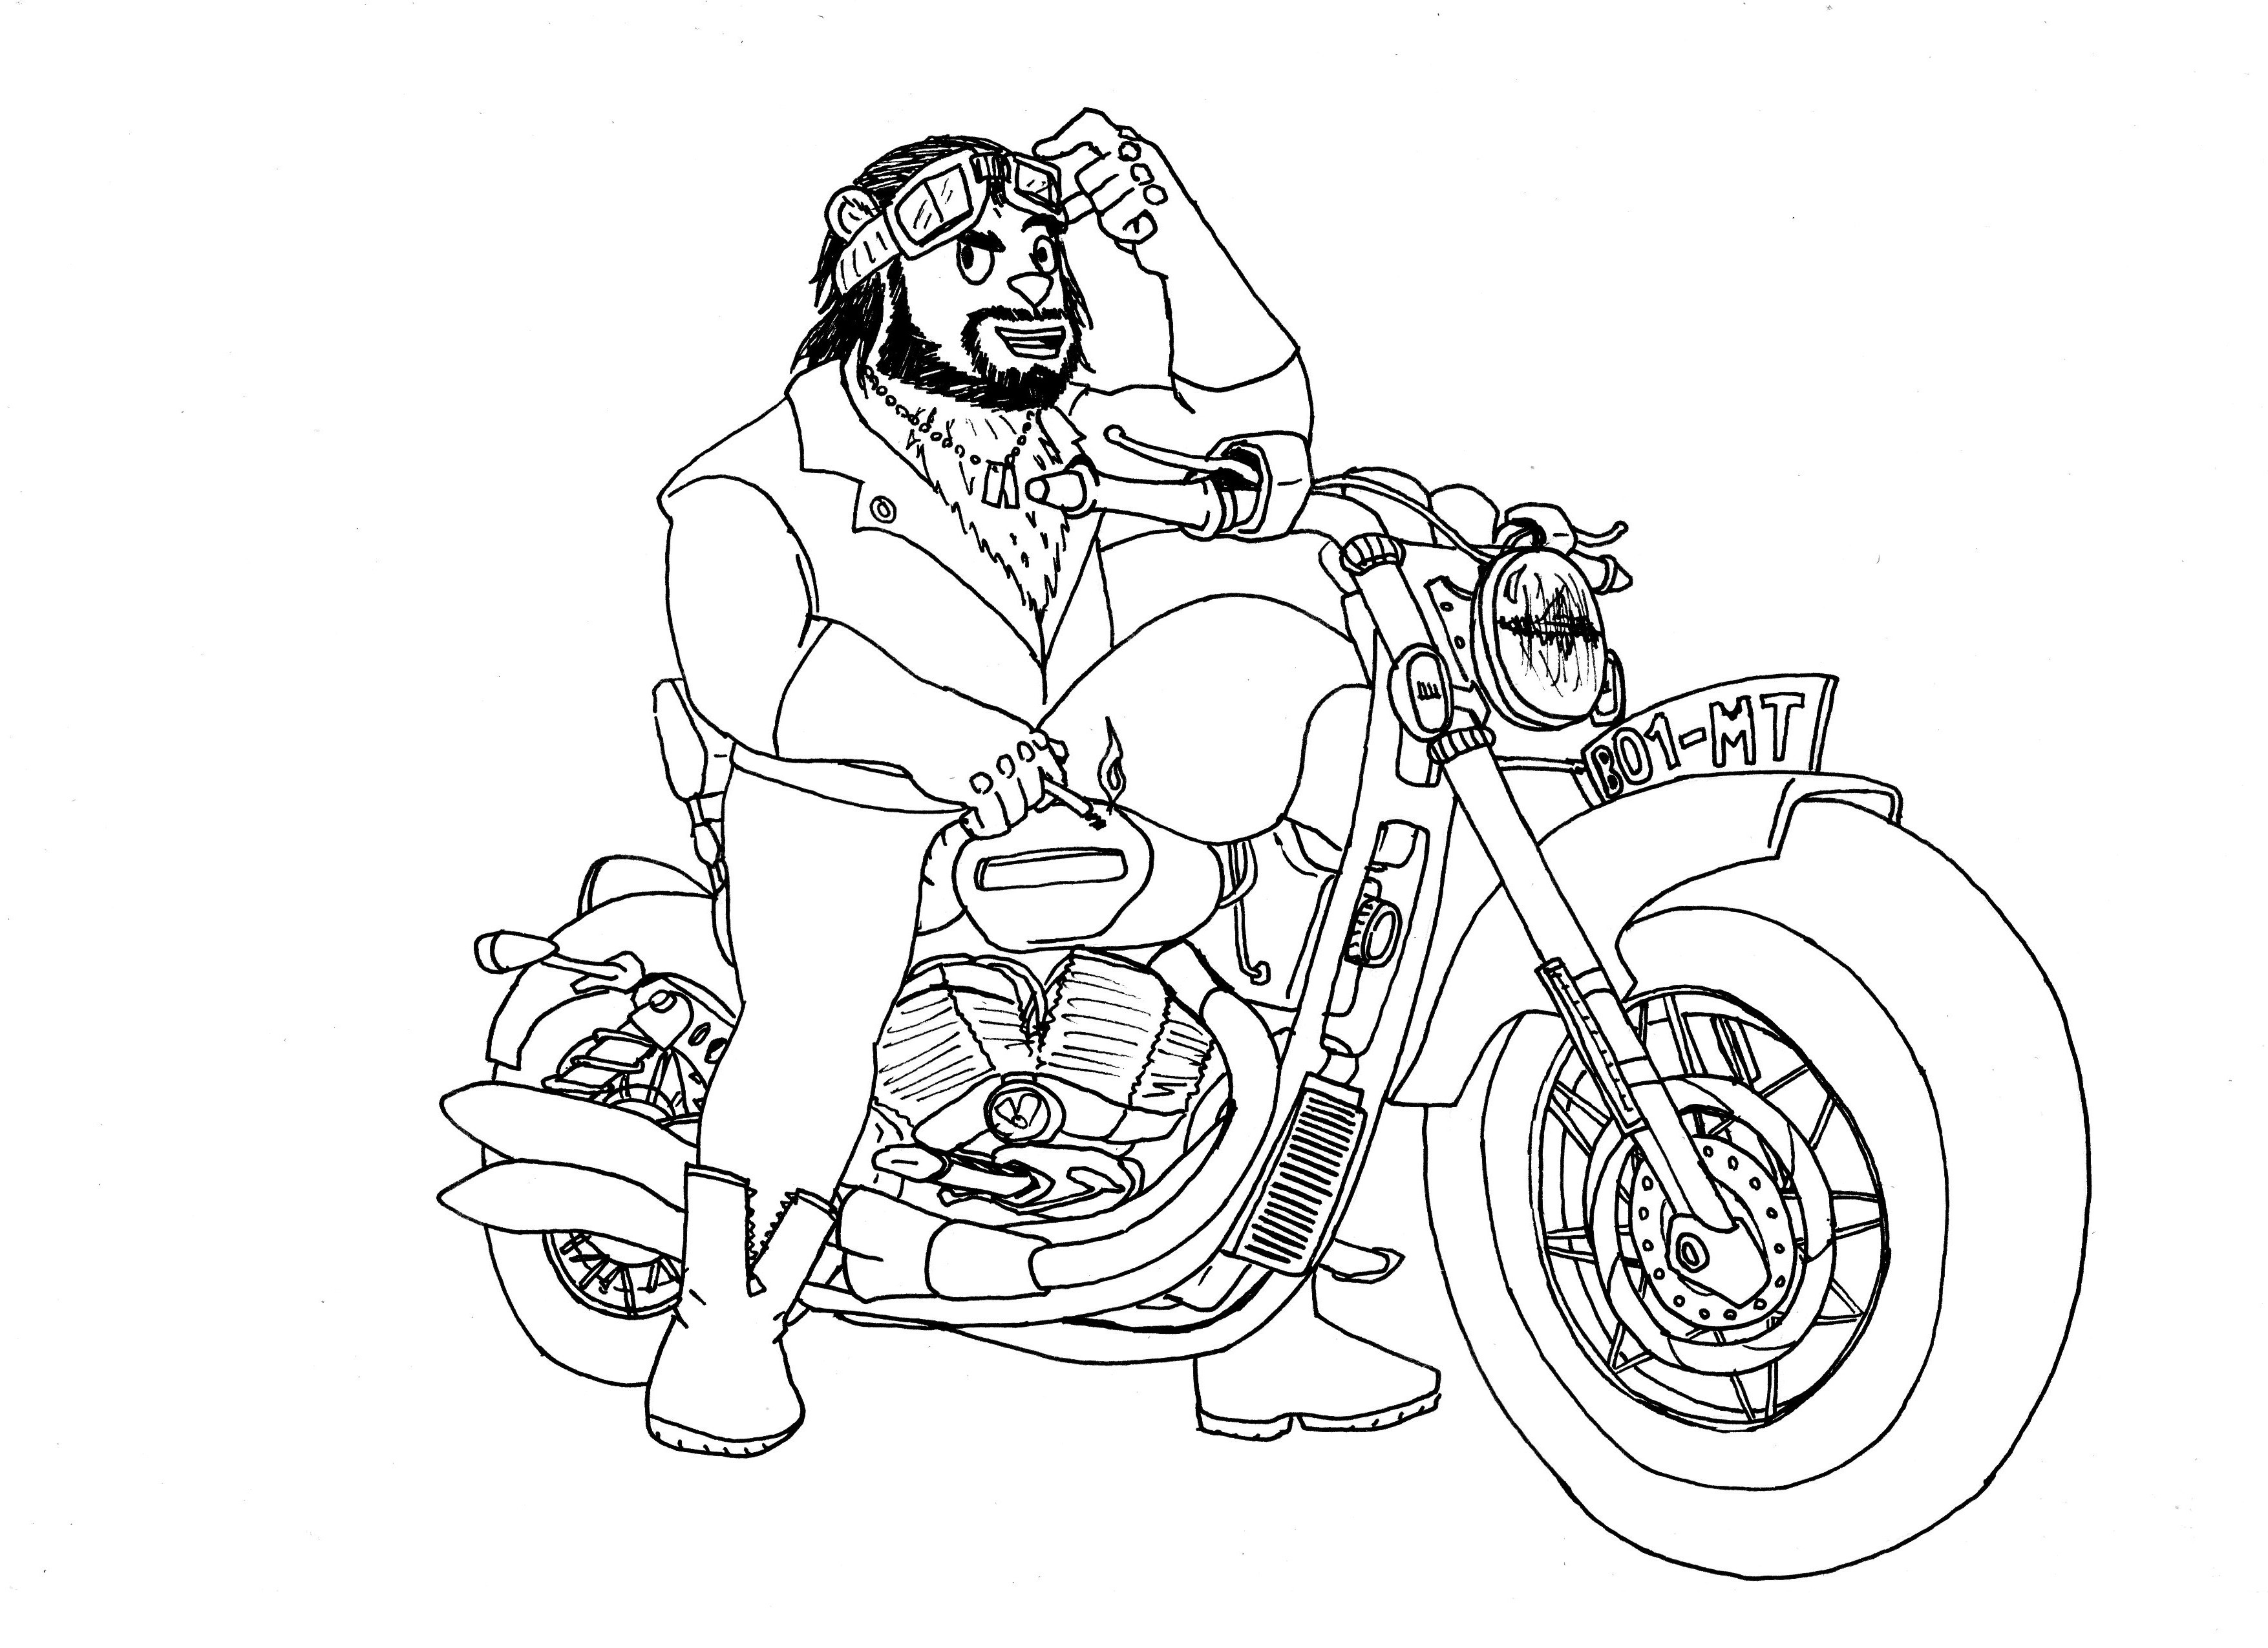 Disegno di un centauro con bandana su una moto